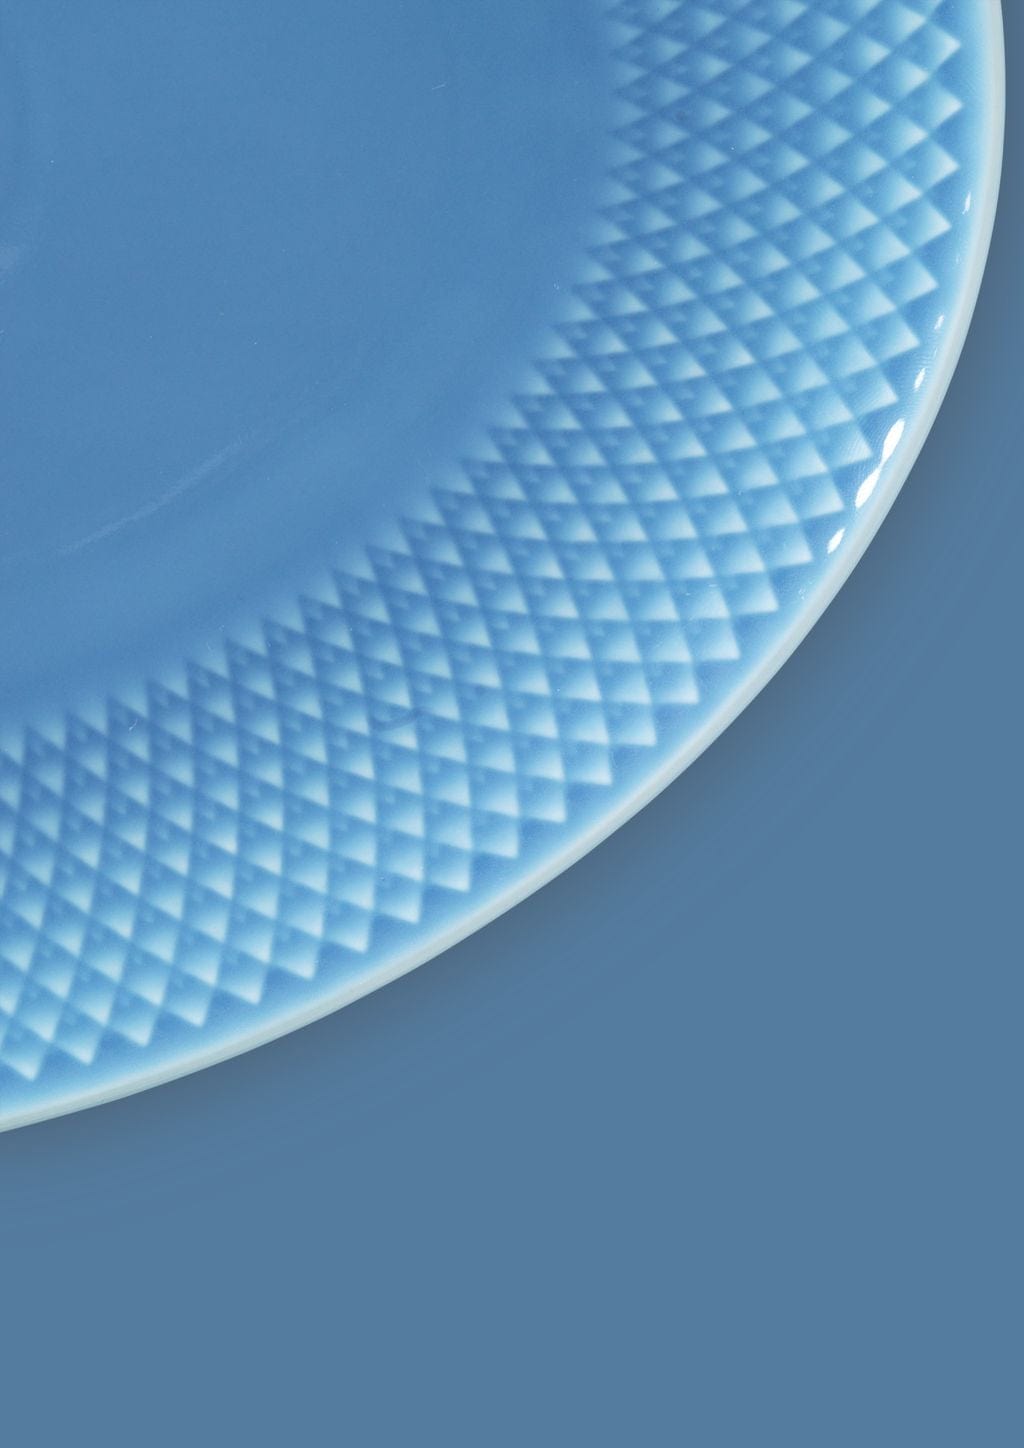 Lyngby Porcelæn Rhombe Color Oval Serving Fad 28,5x21,5, blå